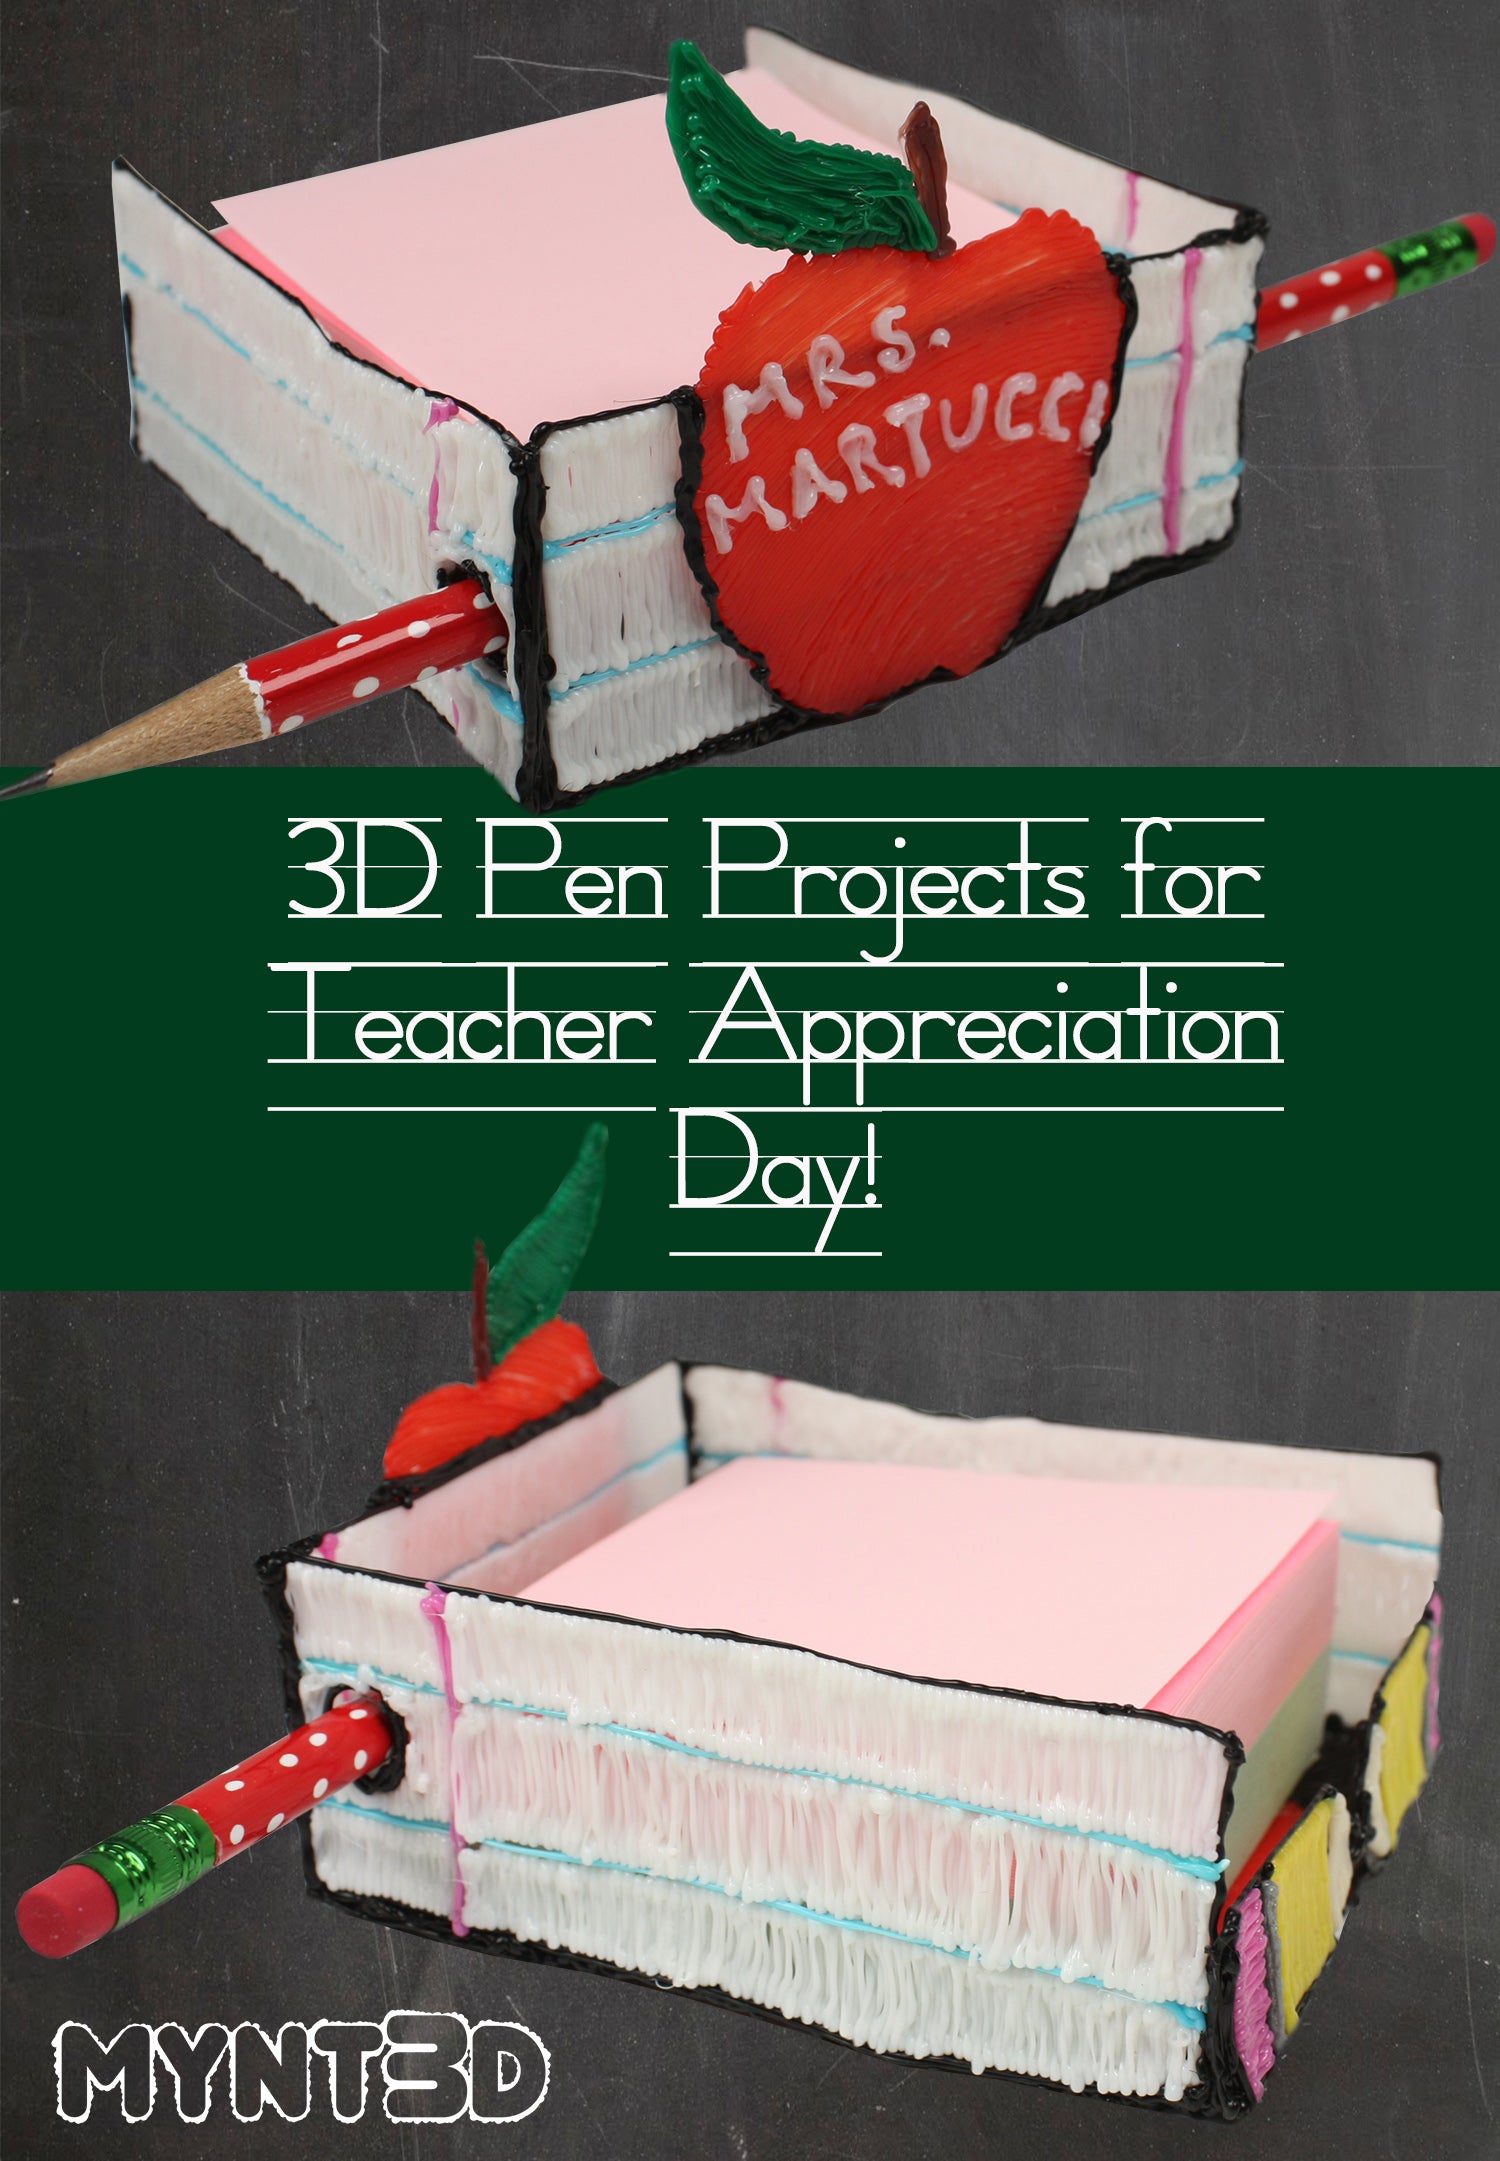 DIY Teacher Gifts using a 3D Pen - MYNT3D